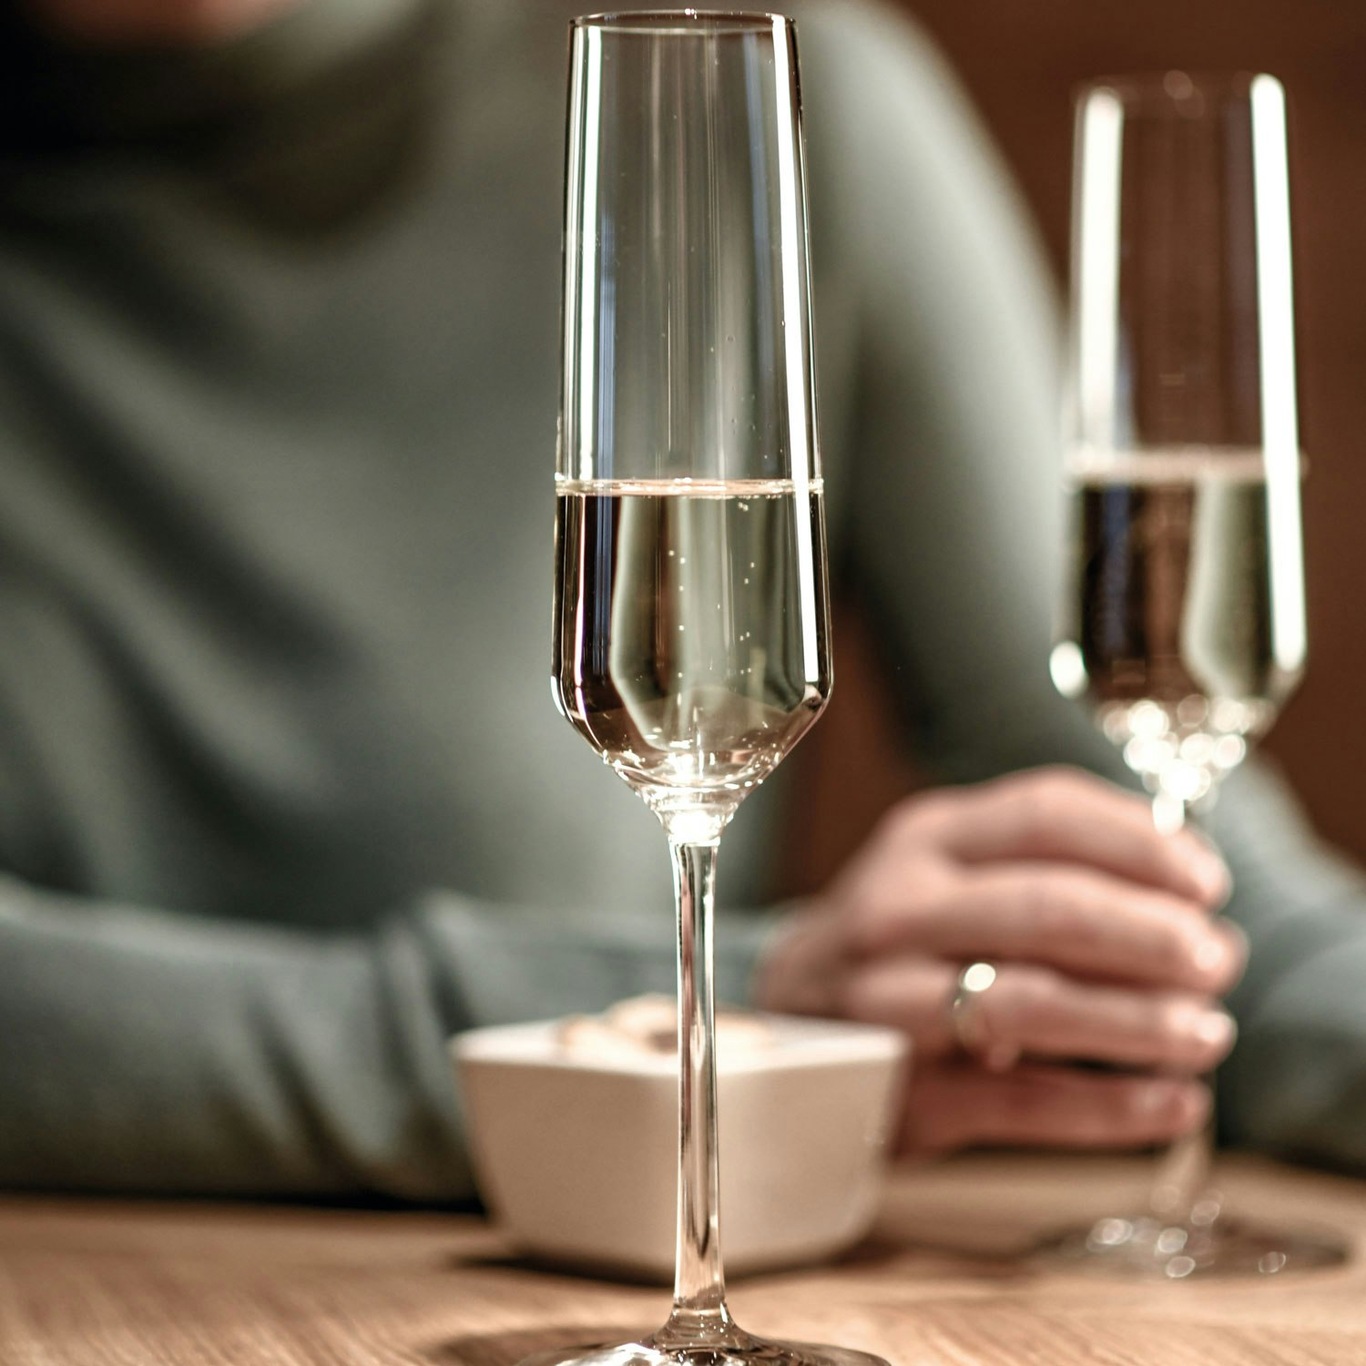 2-pcs champagne glass set, 209 ml, Pure - Schott Zwiesel